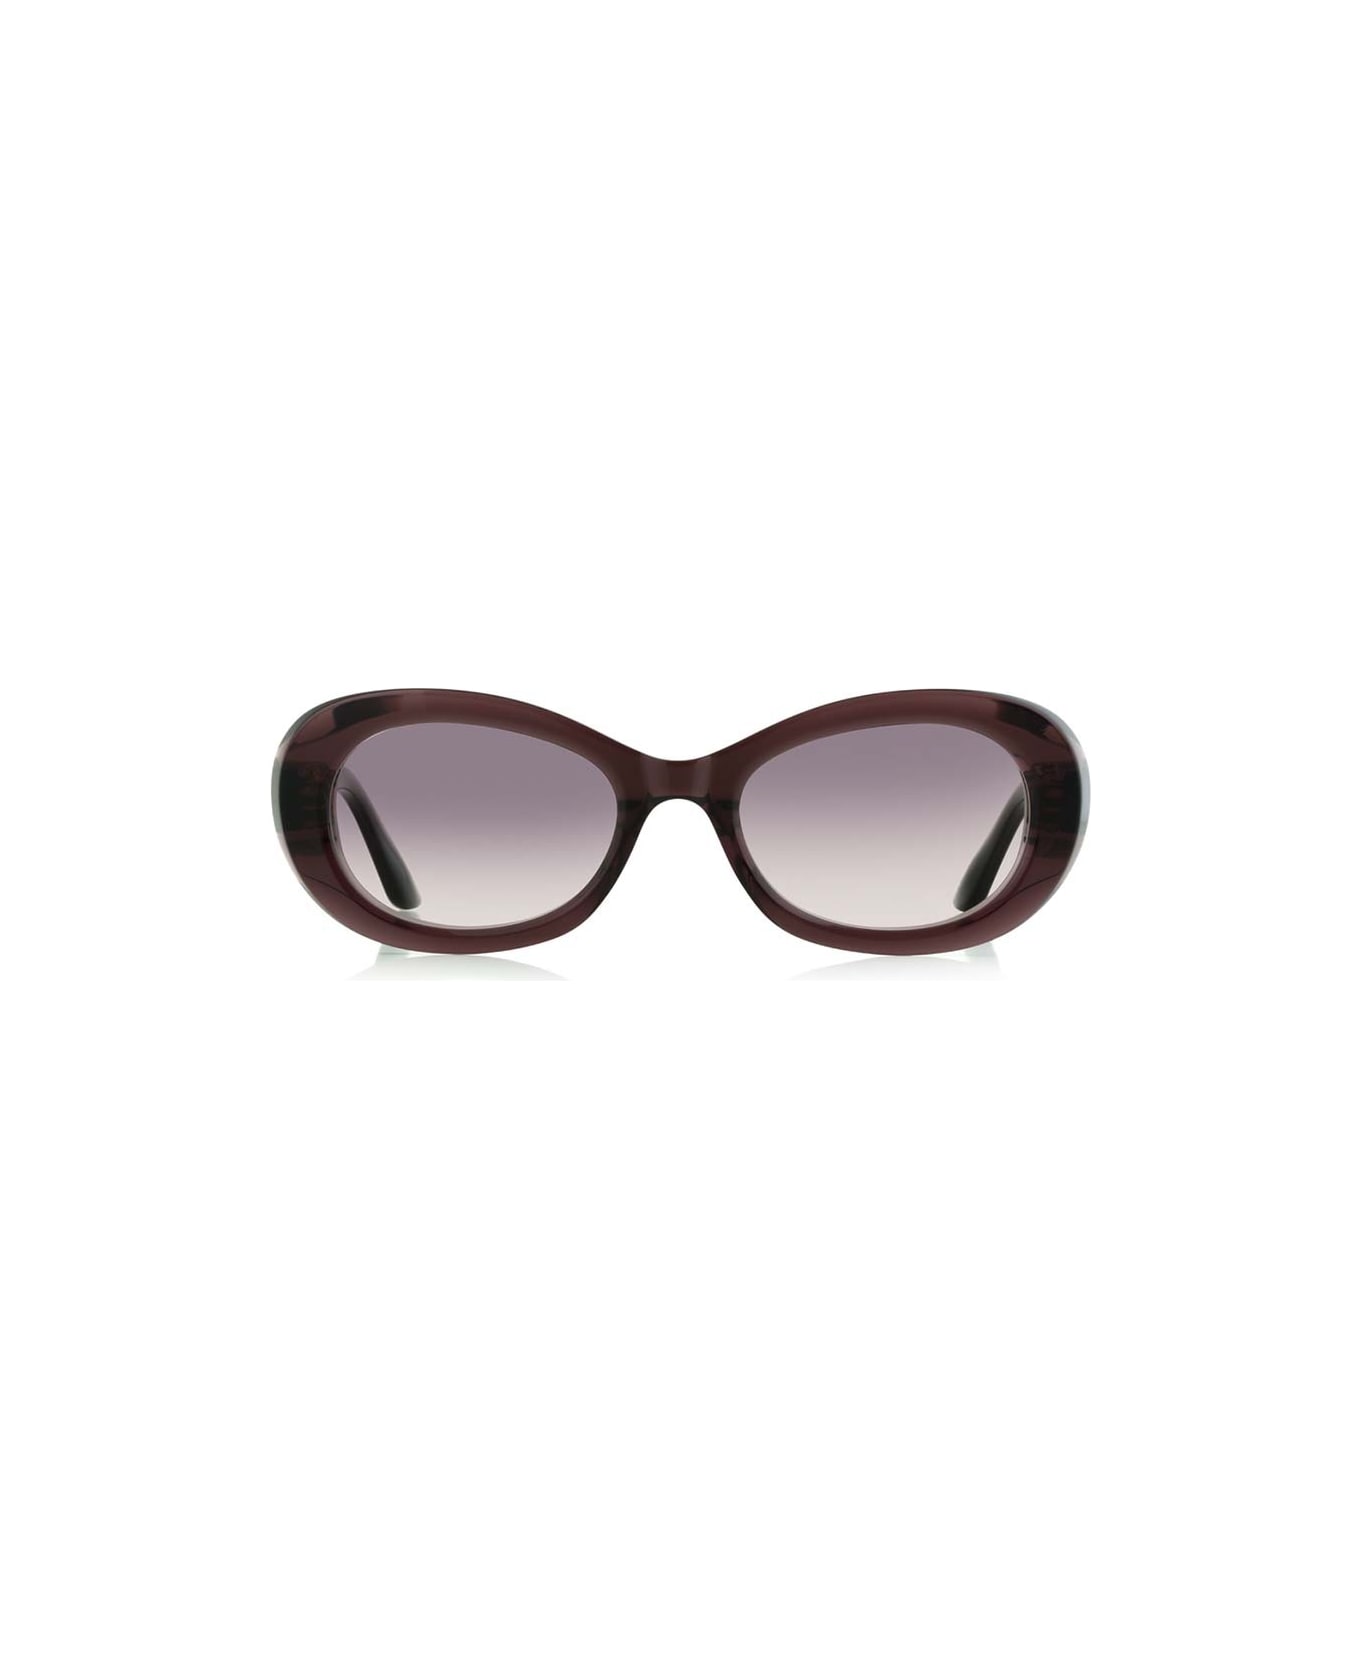 Robert La Roche Sunglasses - Bordeaux/Rosso サングラス